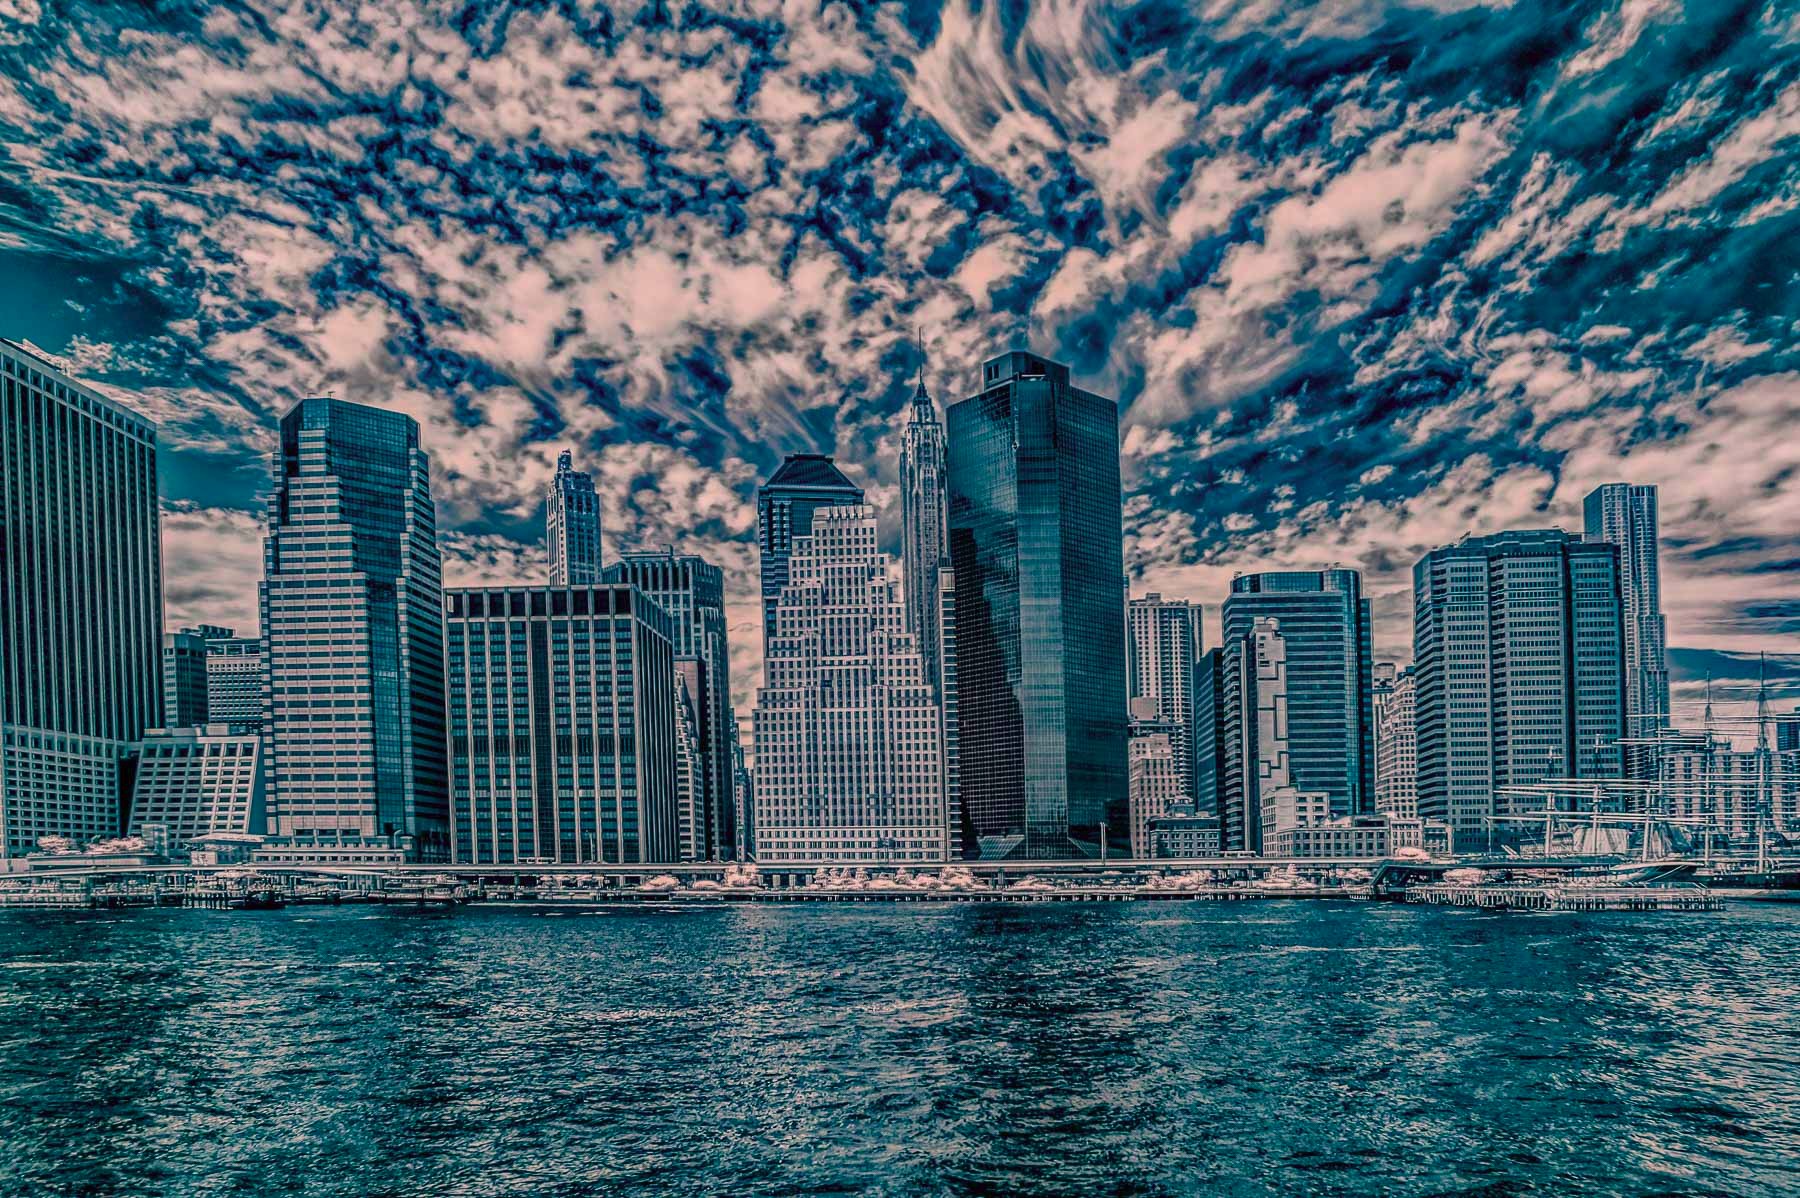 New York City infrared - HDR skyline